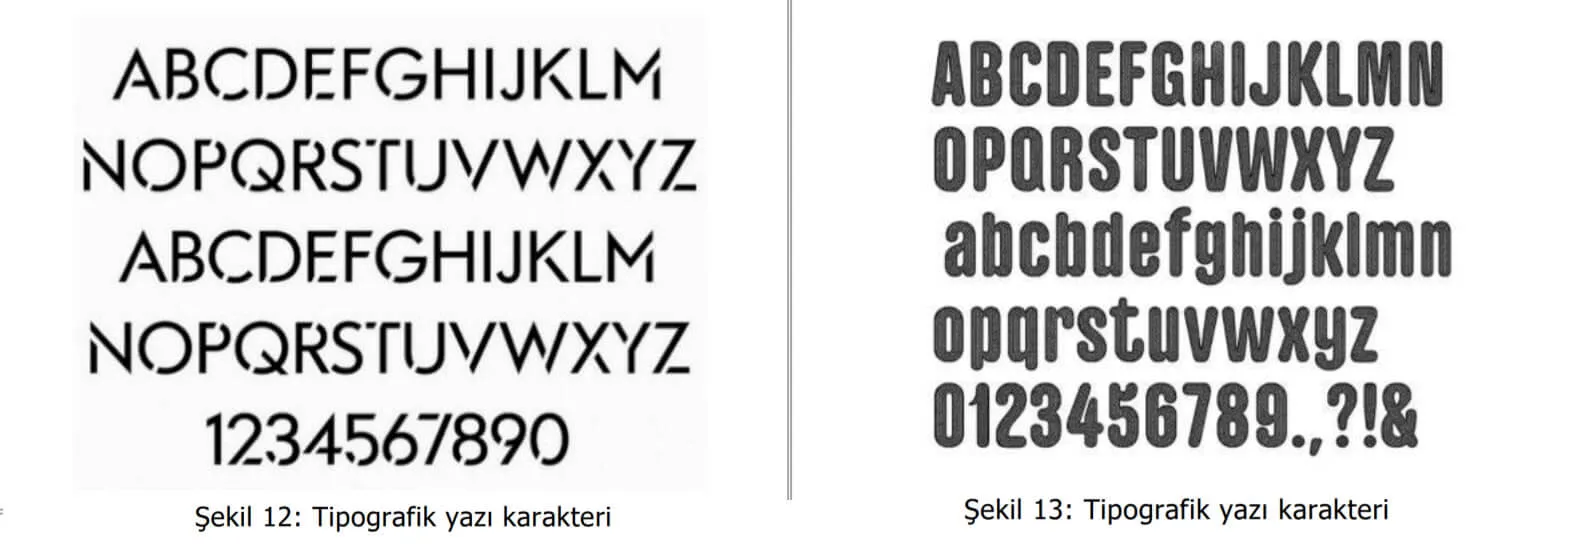 tipografik yazı karakter örnekleri-eskişehir patent